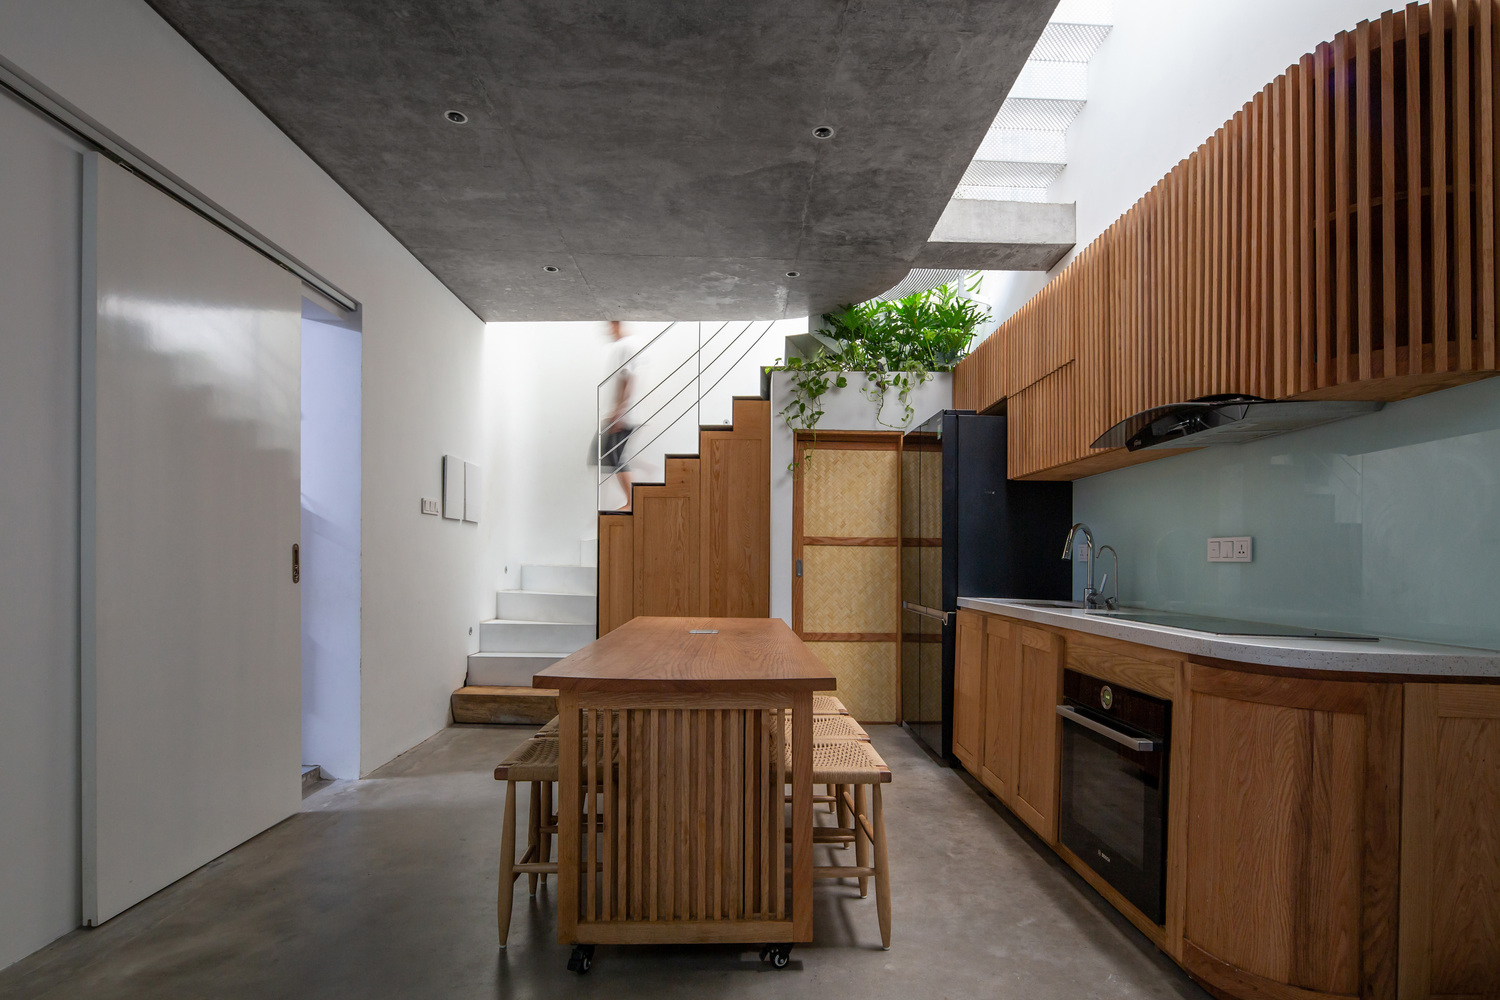 Nhà bếp và phòng ăn nằm ở tầng trệt. Không gian này được thiết kế để đón sáng tự nhiên tối đa từ tầng mái, giếng trời và các khoảng trống.